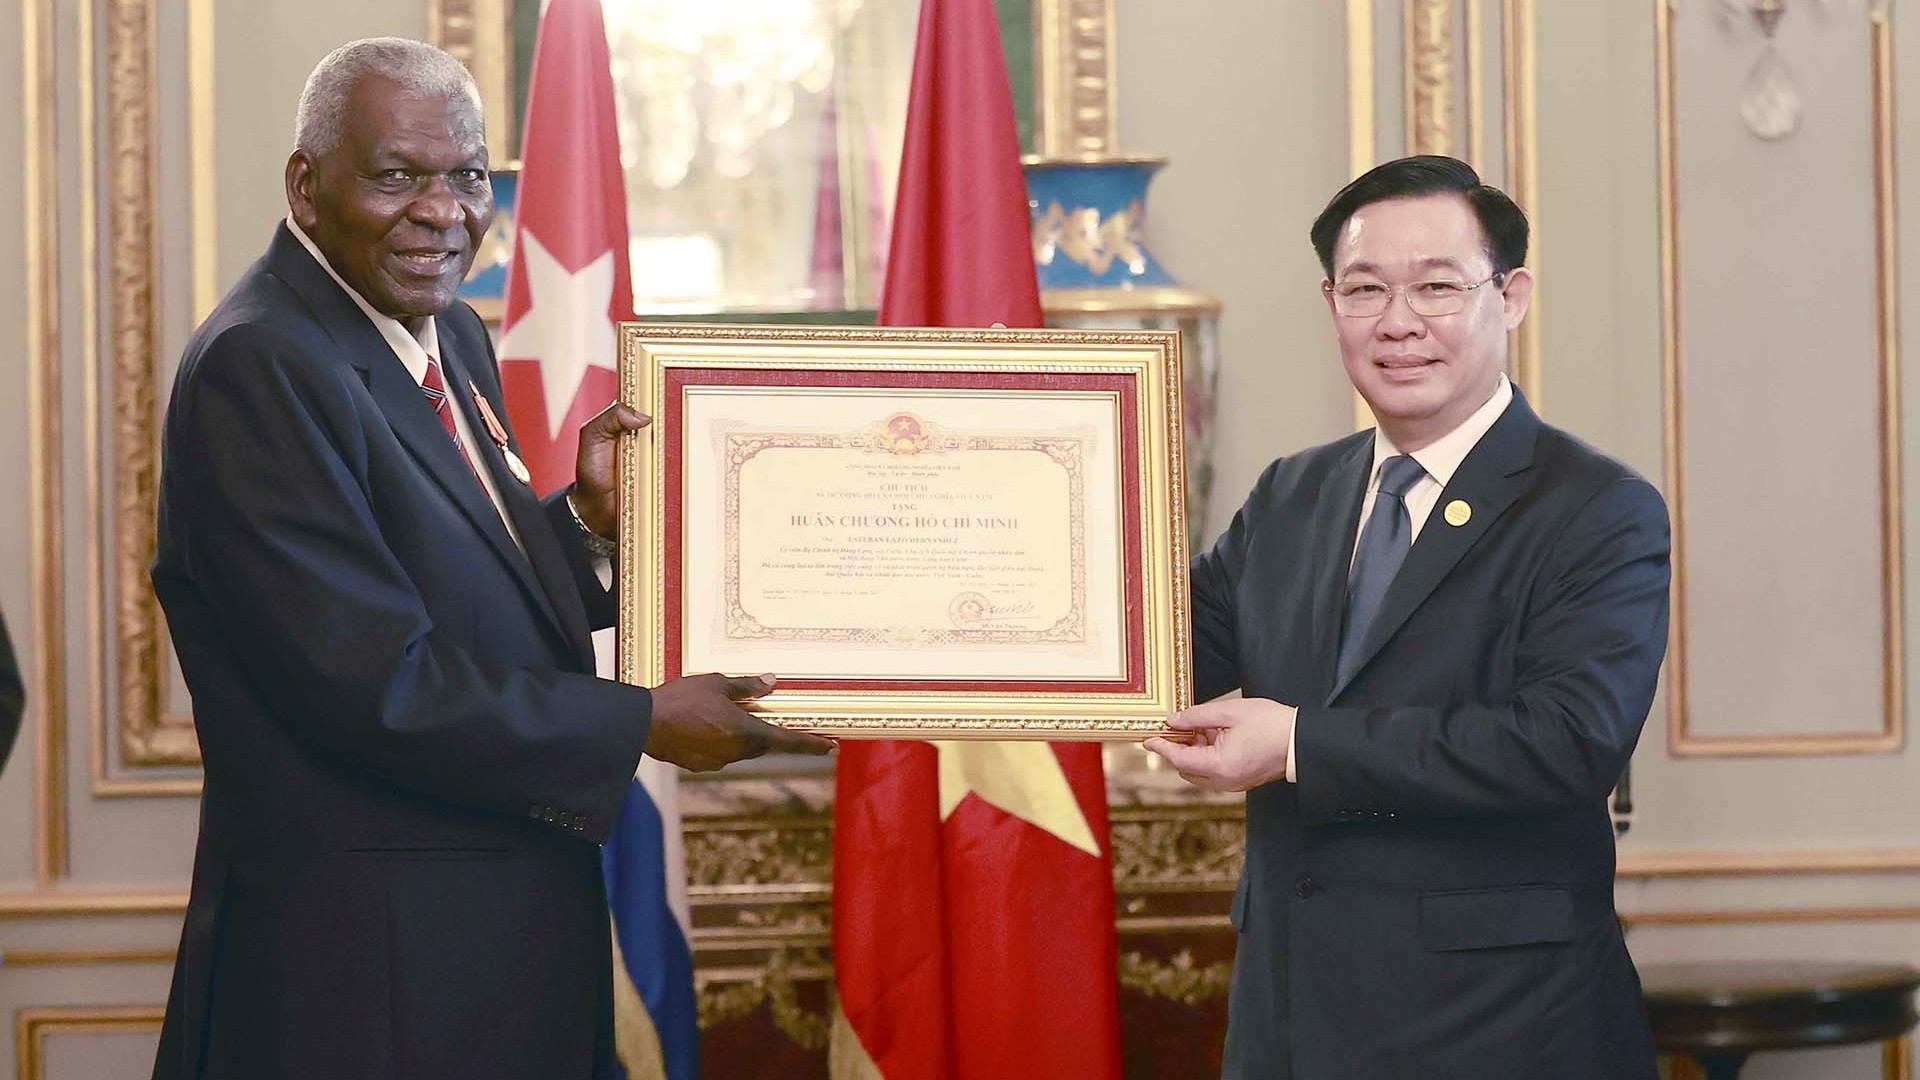 Trao Huân chương Hồ Chí Minh tặng Chủ tịch Quốc hội Cuba Esteban Lazo Hernández